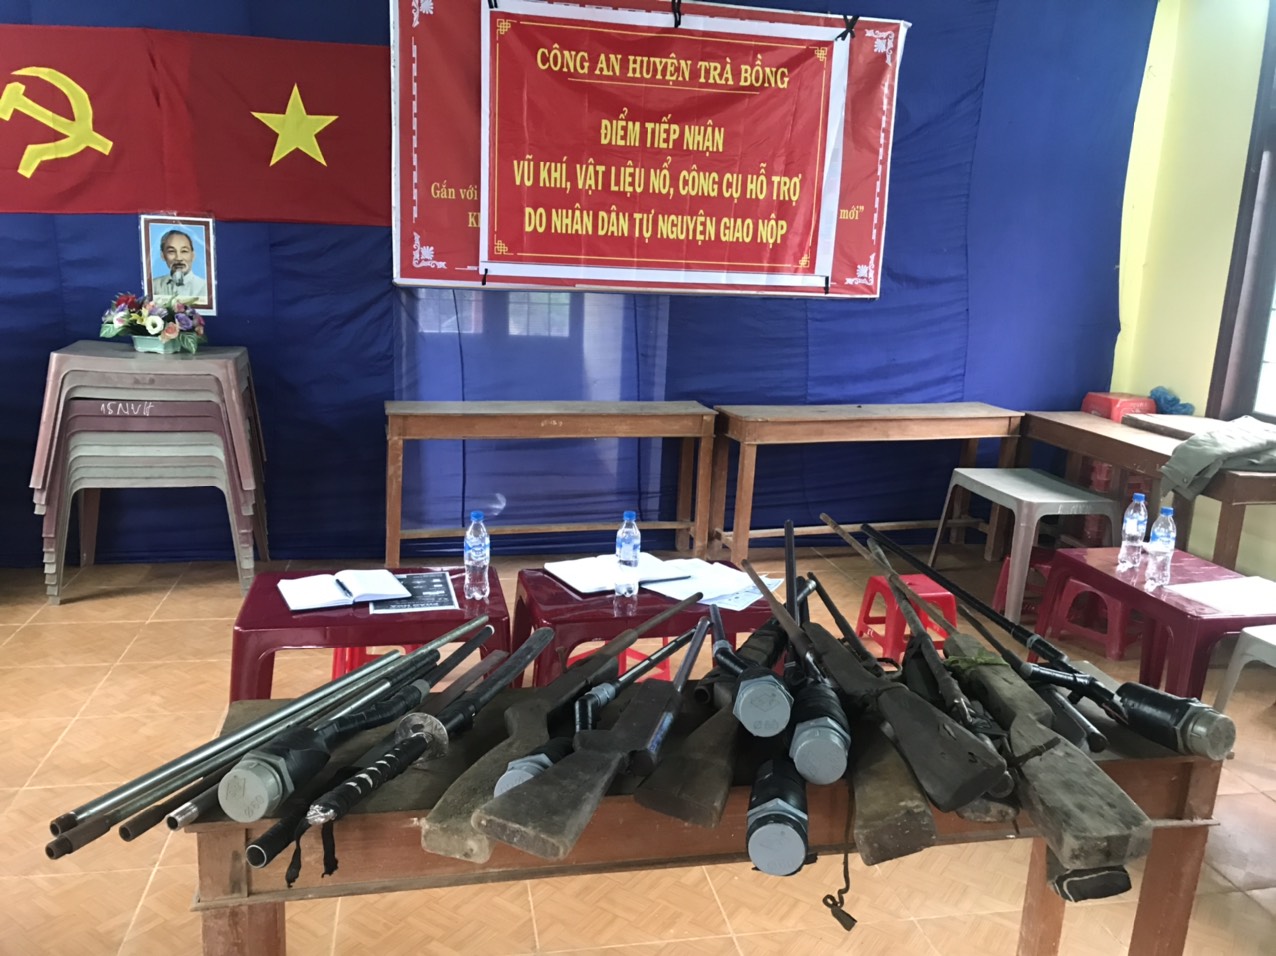 Trà Bồng: Triển khai hiệu quả đợt cao điểm vận động toàn dân giao nộp vũ khí, vật liệu nổ, công cụ hỗ trợ